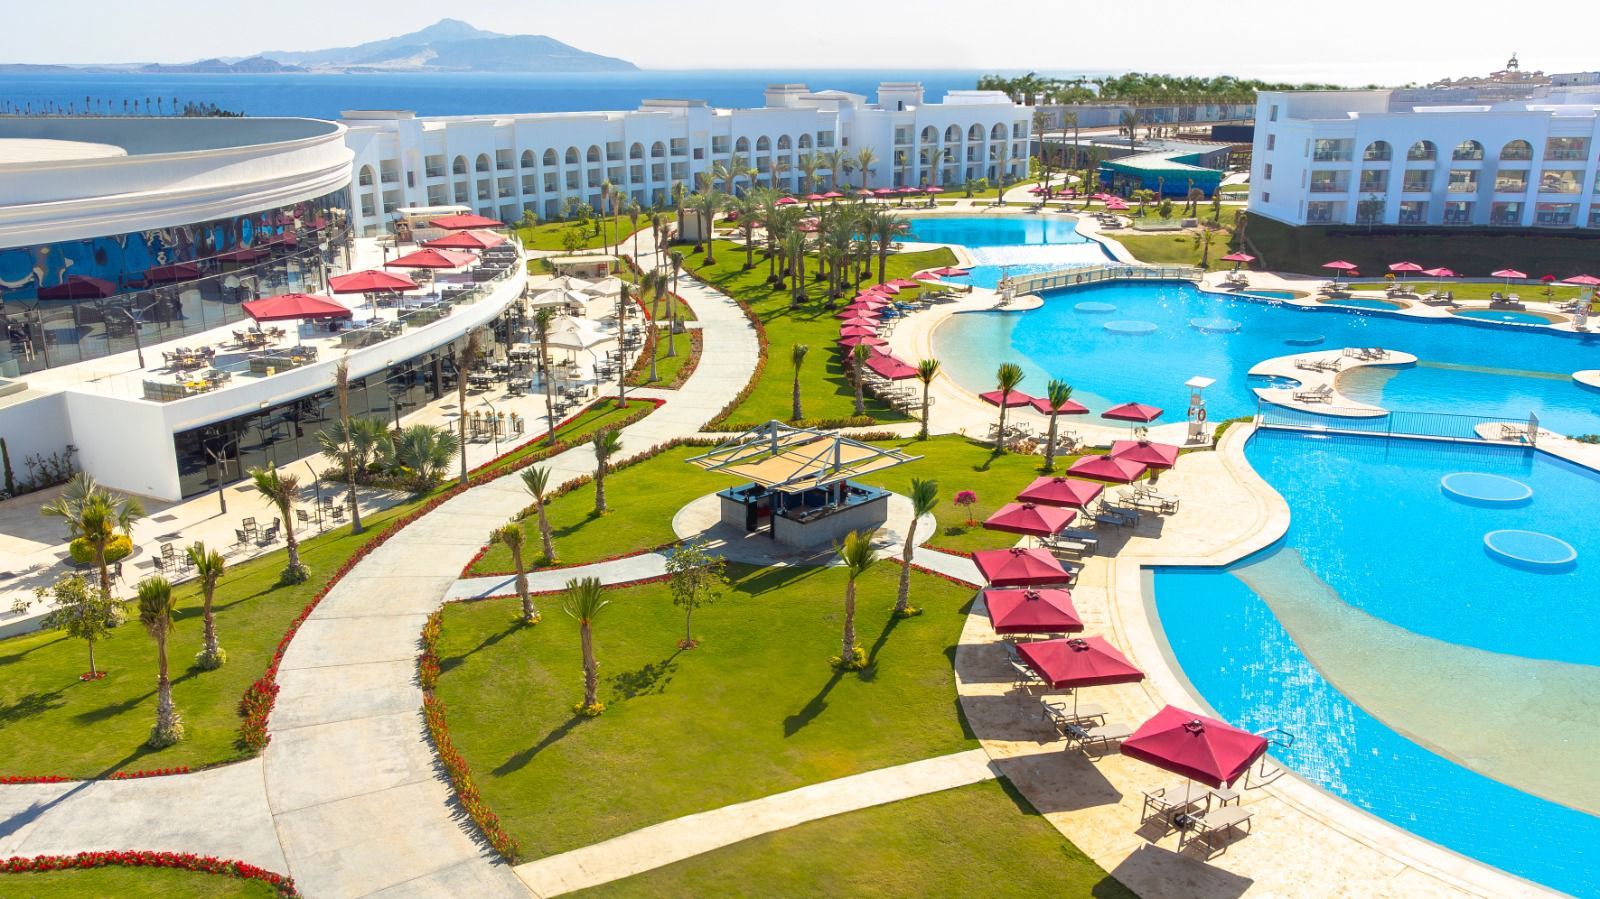 Rixos Radamis будет самым крупным отелем на Ближнем Востоке 3076361 — Kapital.kz 